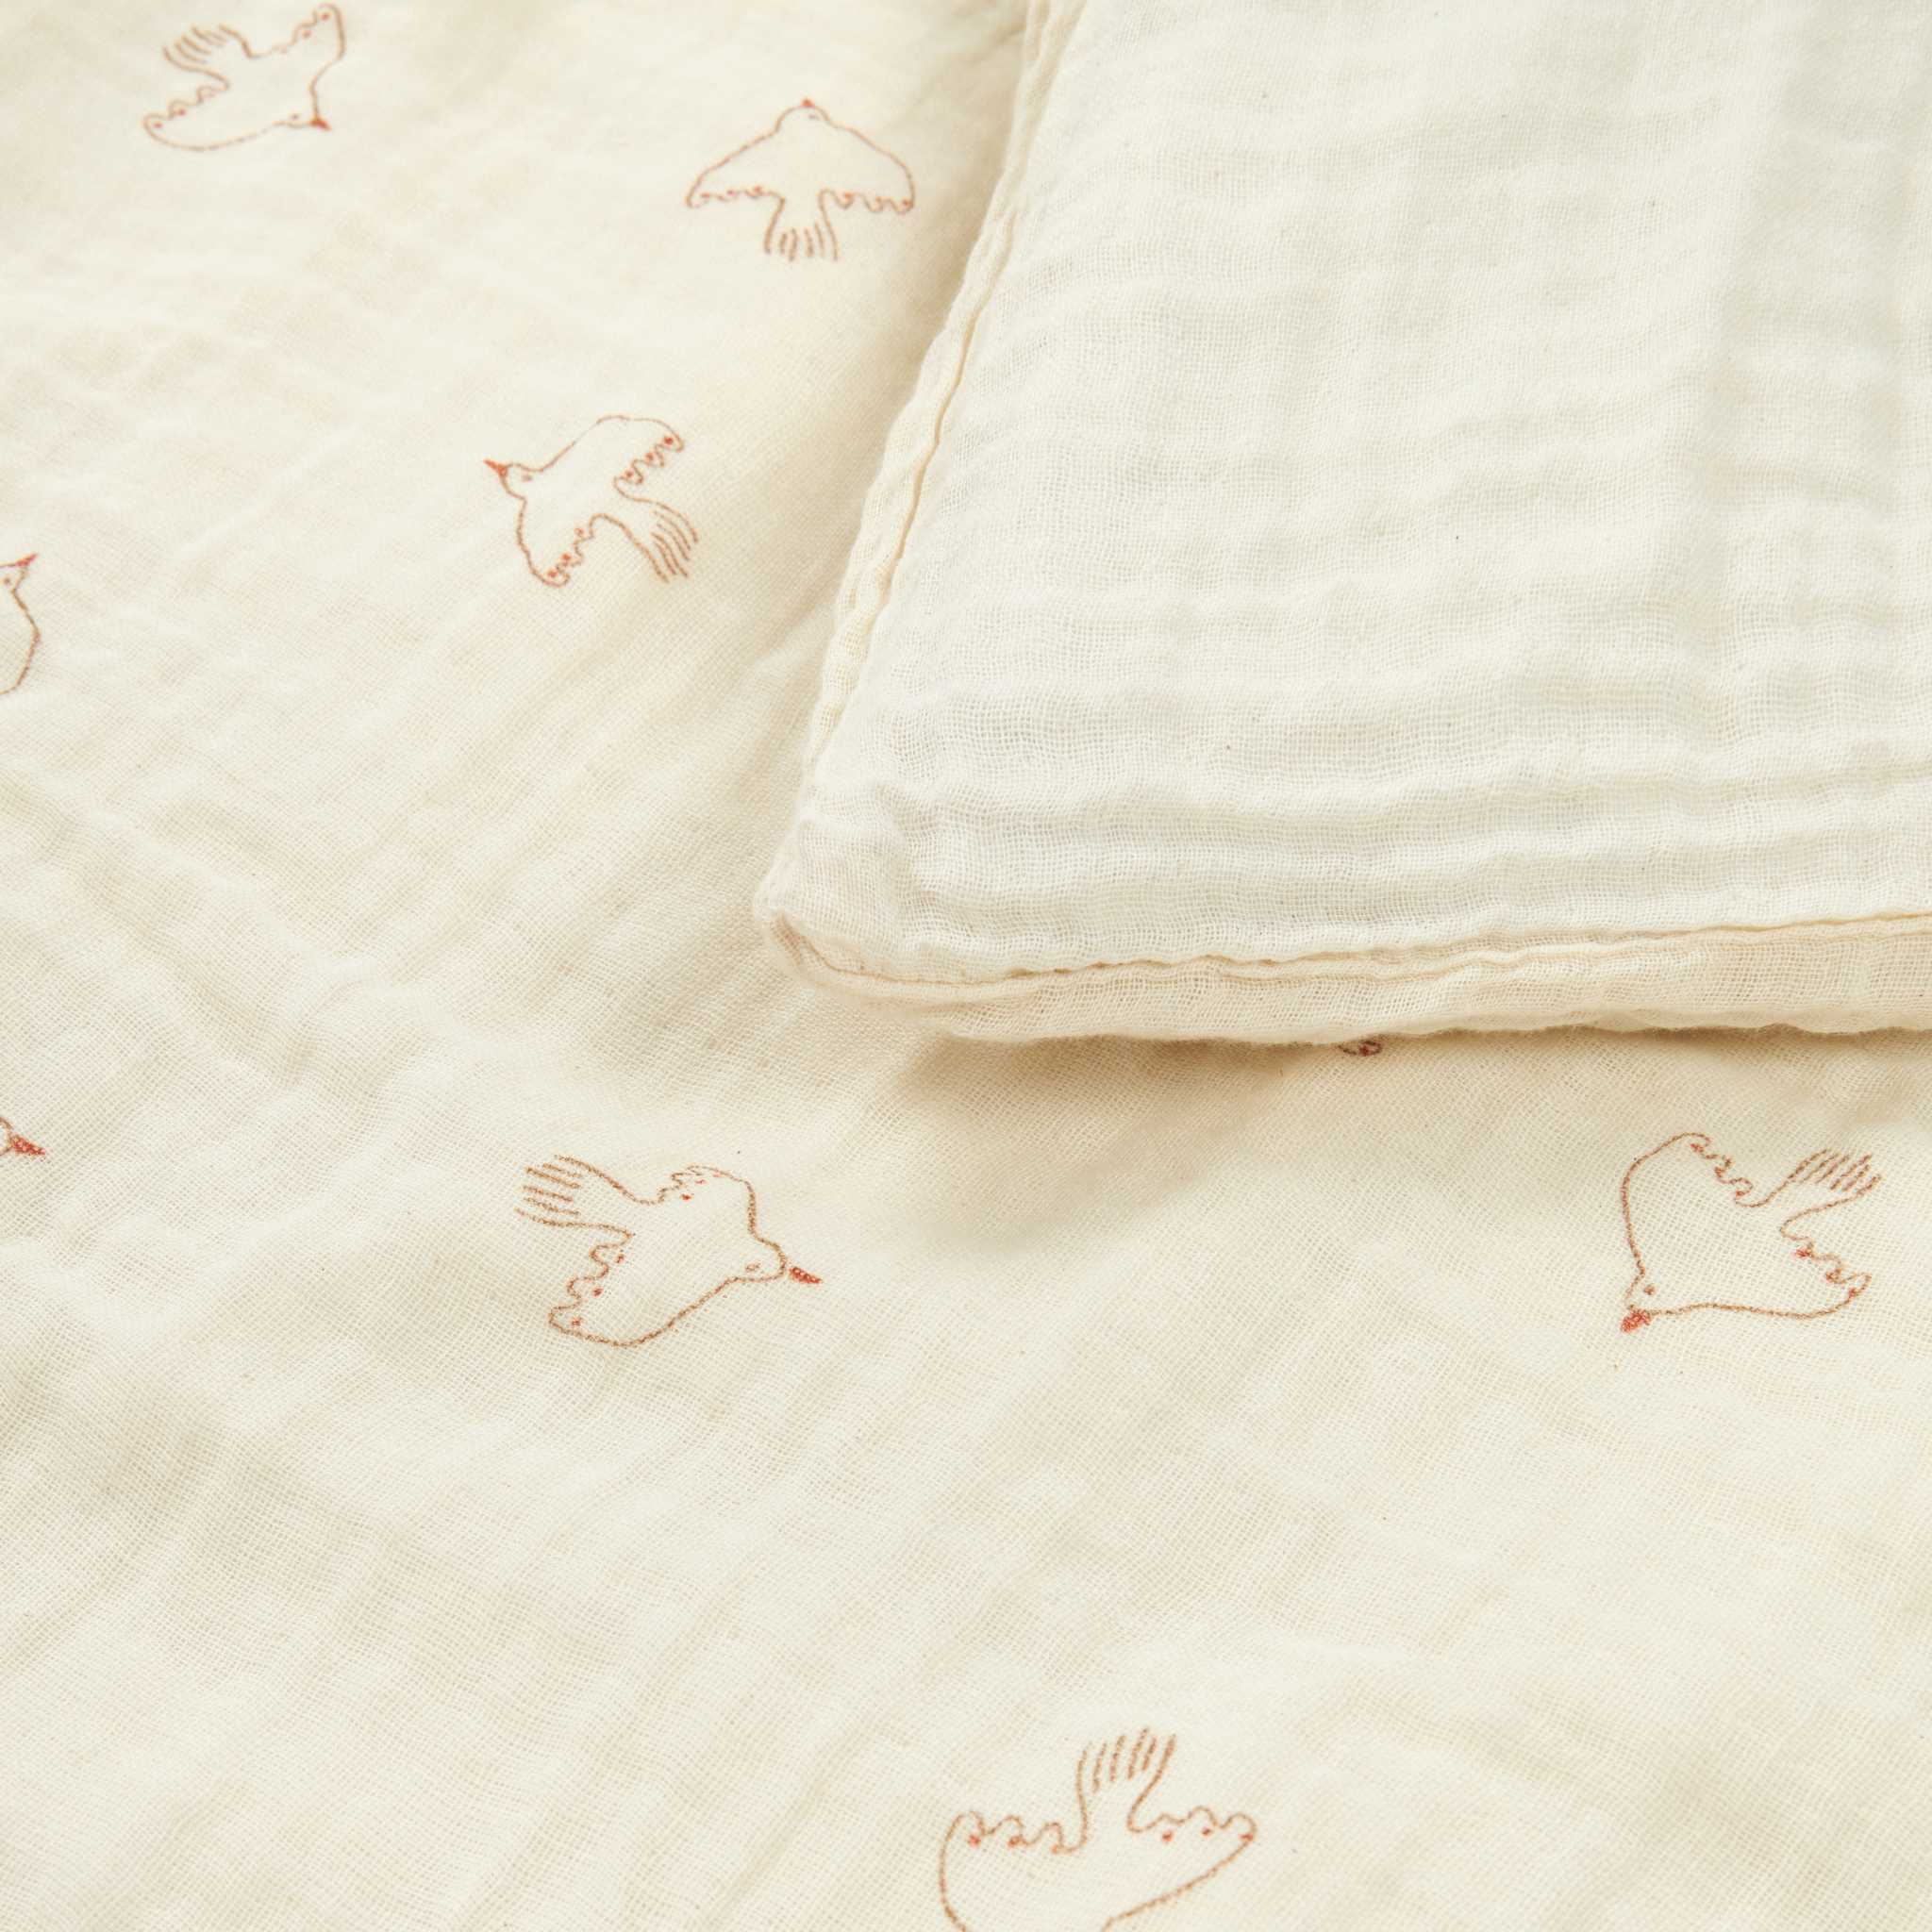 Nobodinoz Wabi Sabi Toddler Bedding Set - Brown Hoshi Birds - Pattern and Material Detail